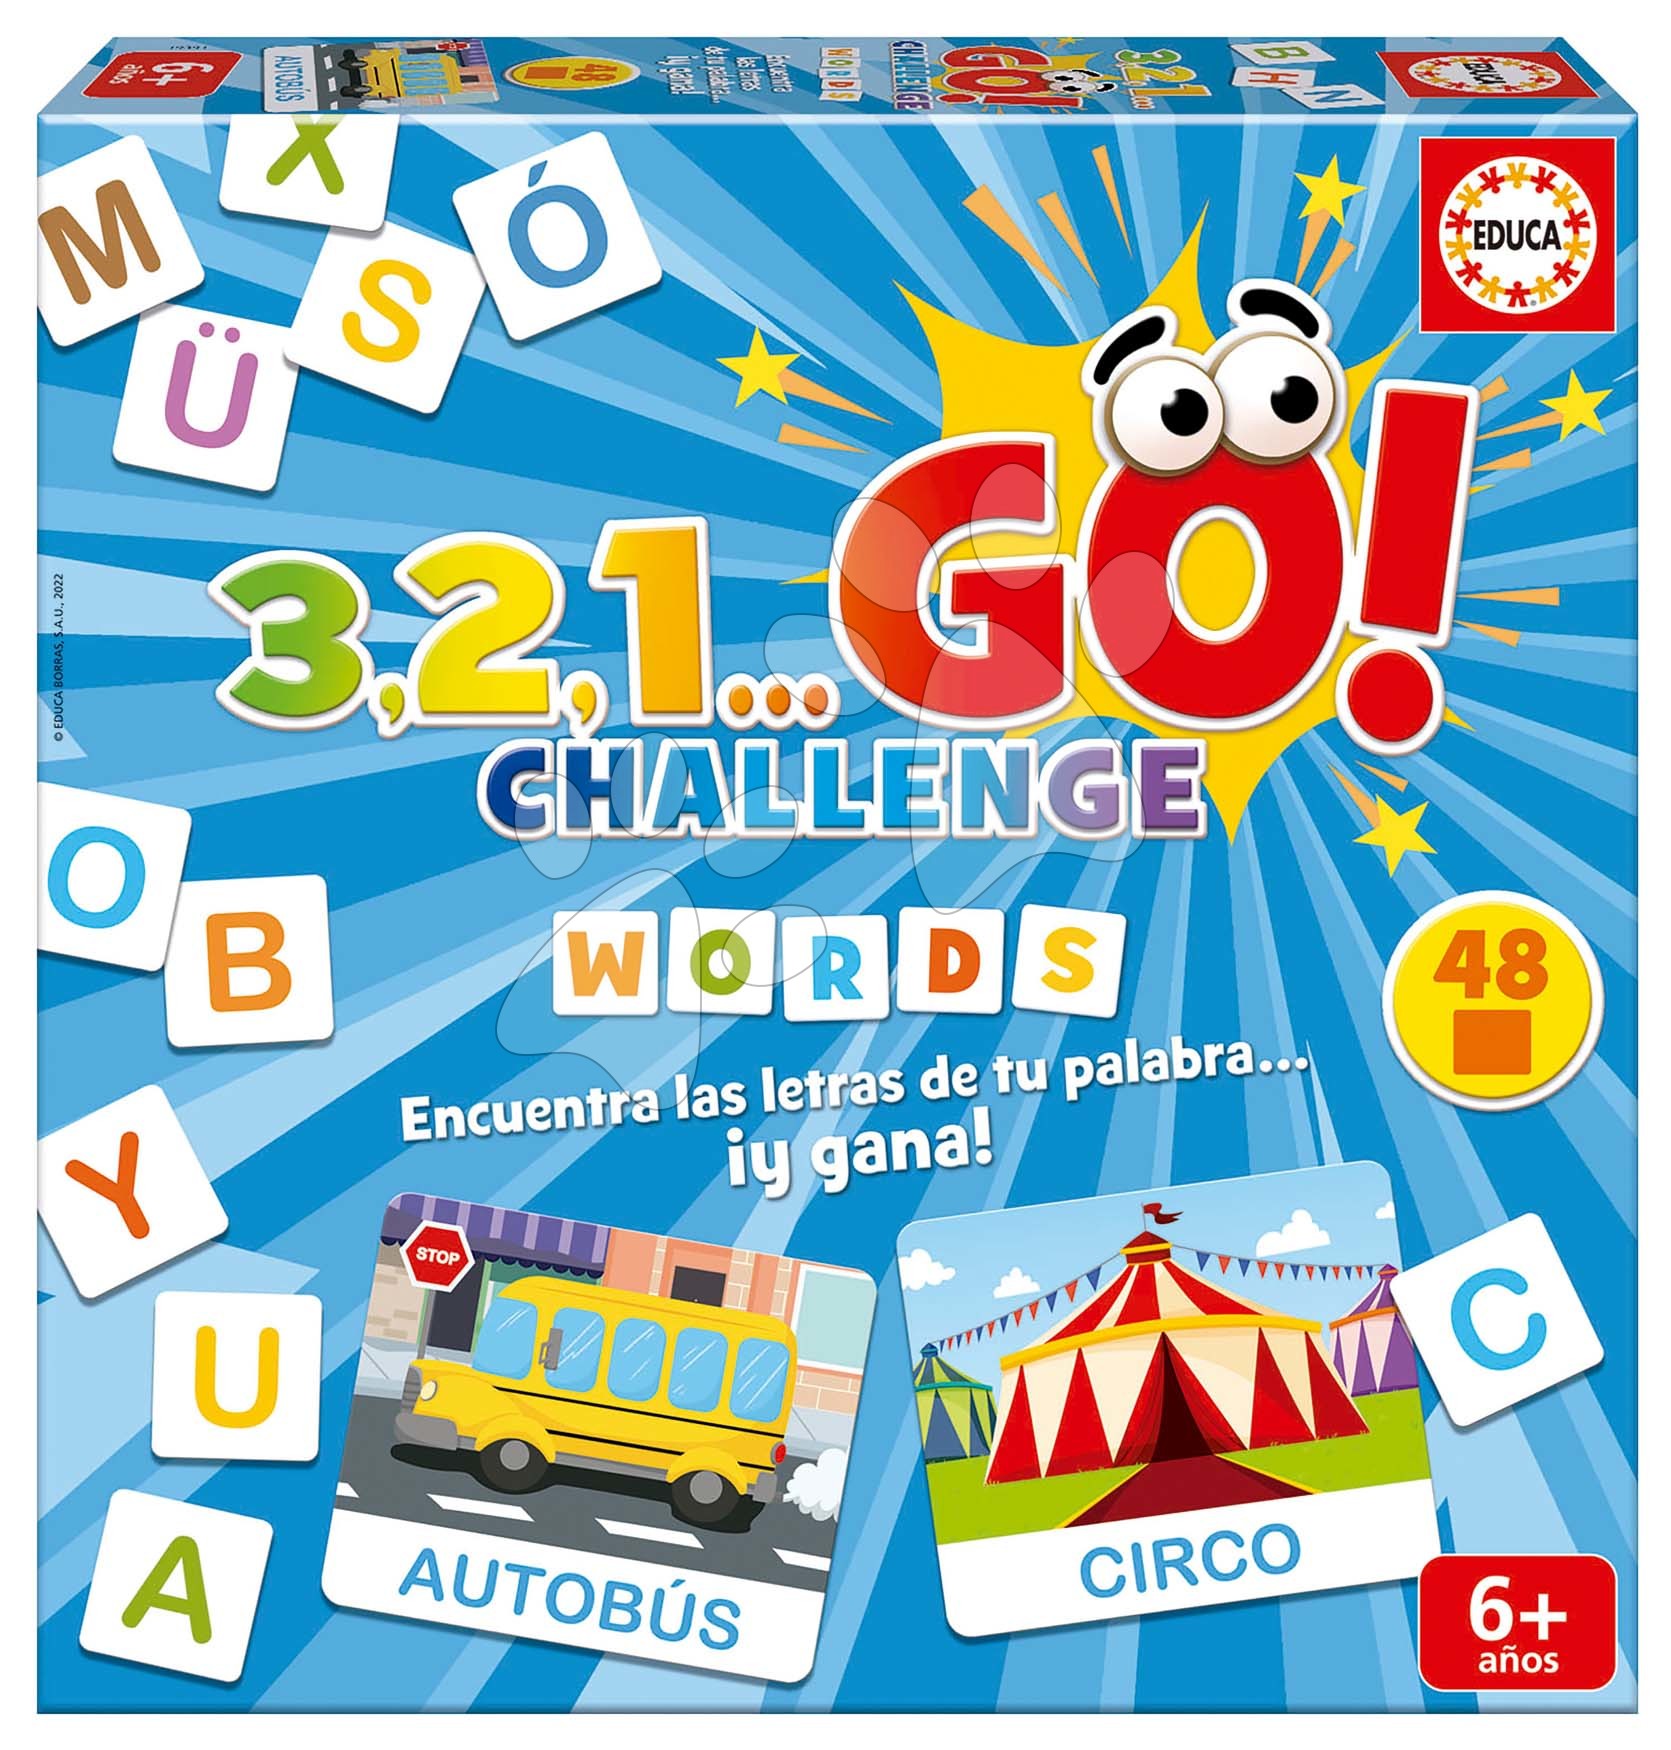 Společenská hra Slova 3,2,1... Go! Challenge Words Educa 48 slov 150 písmen španělsky od 6 let